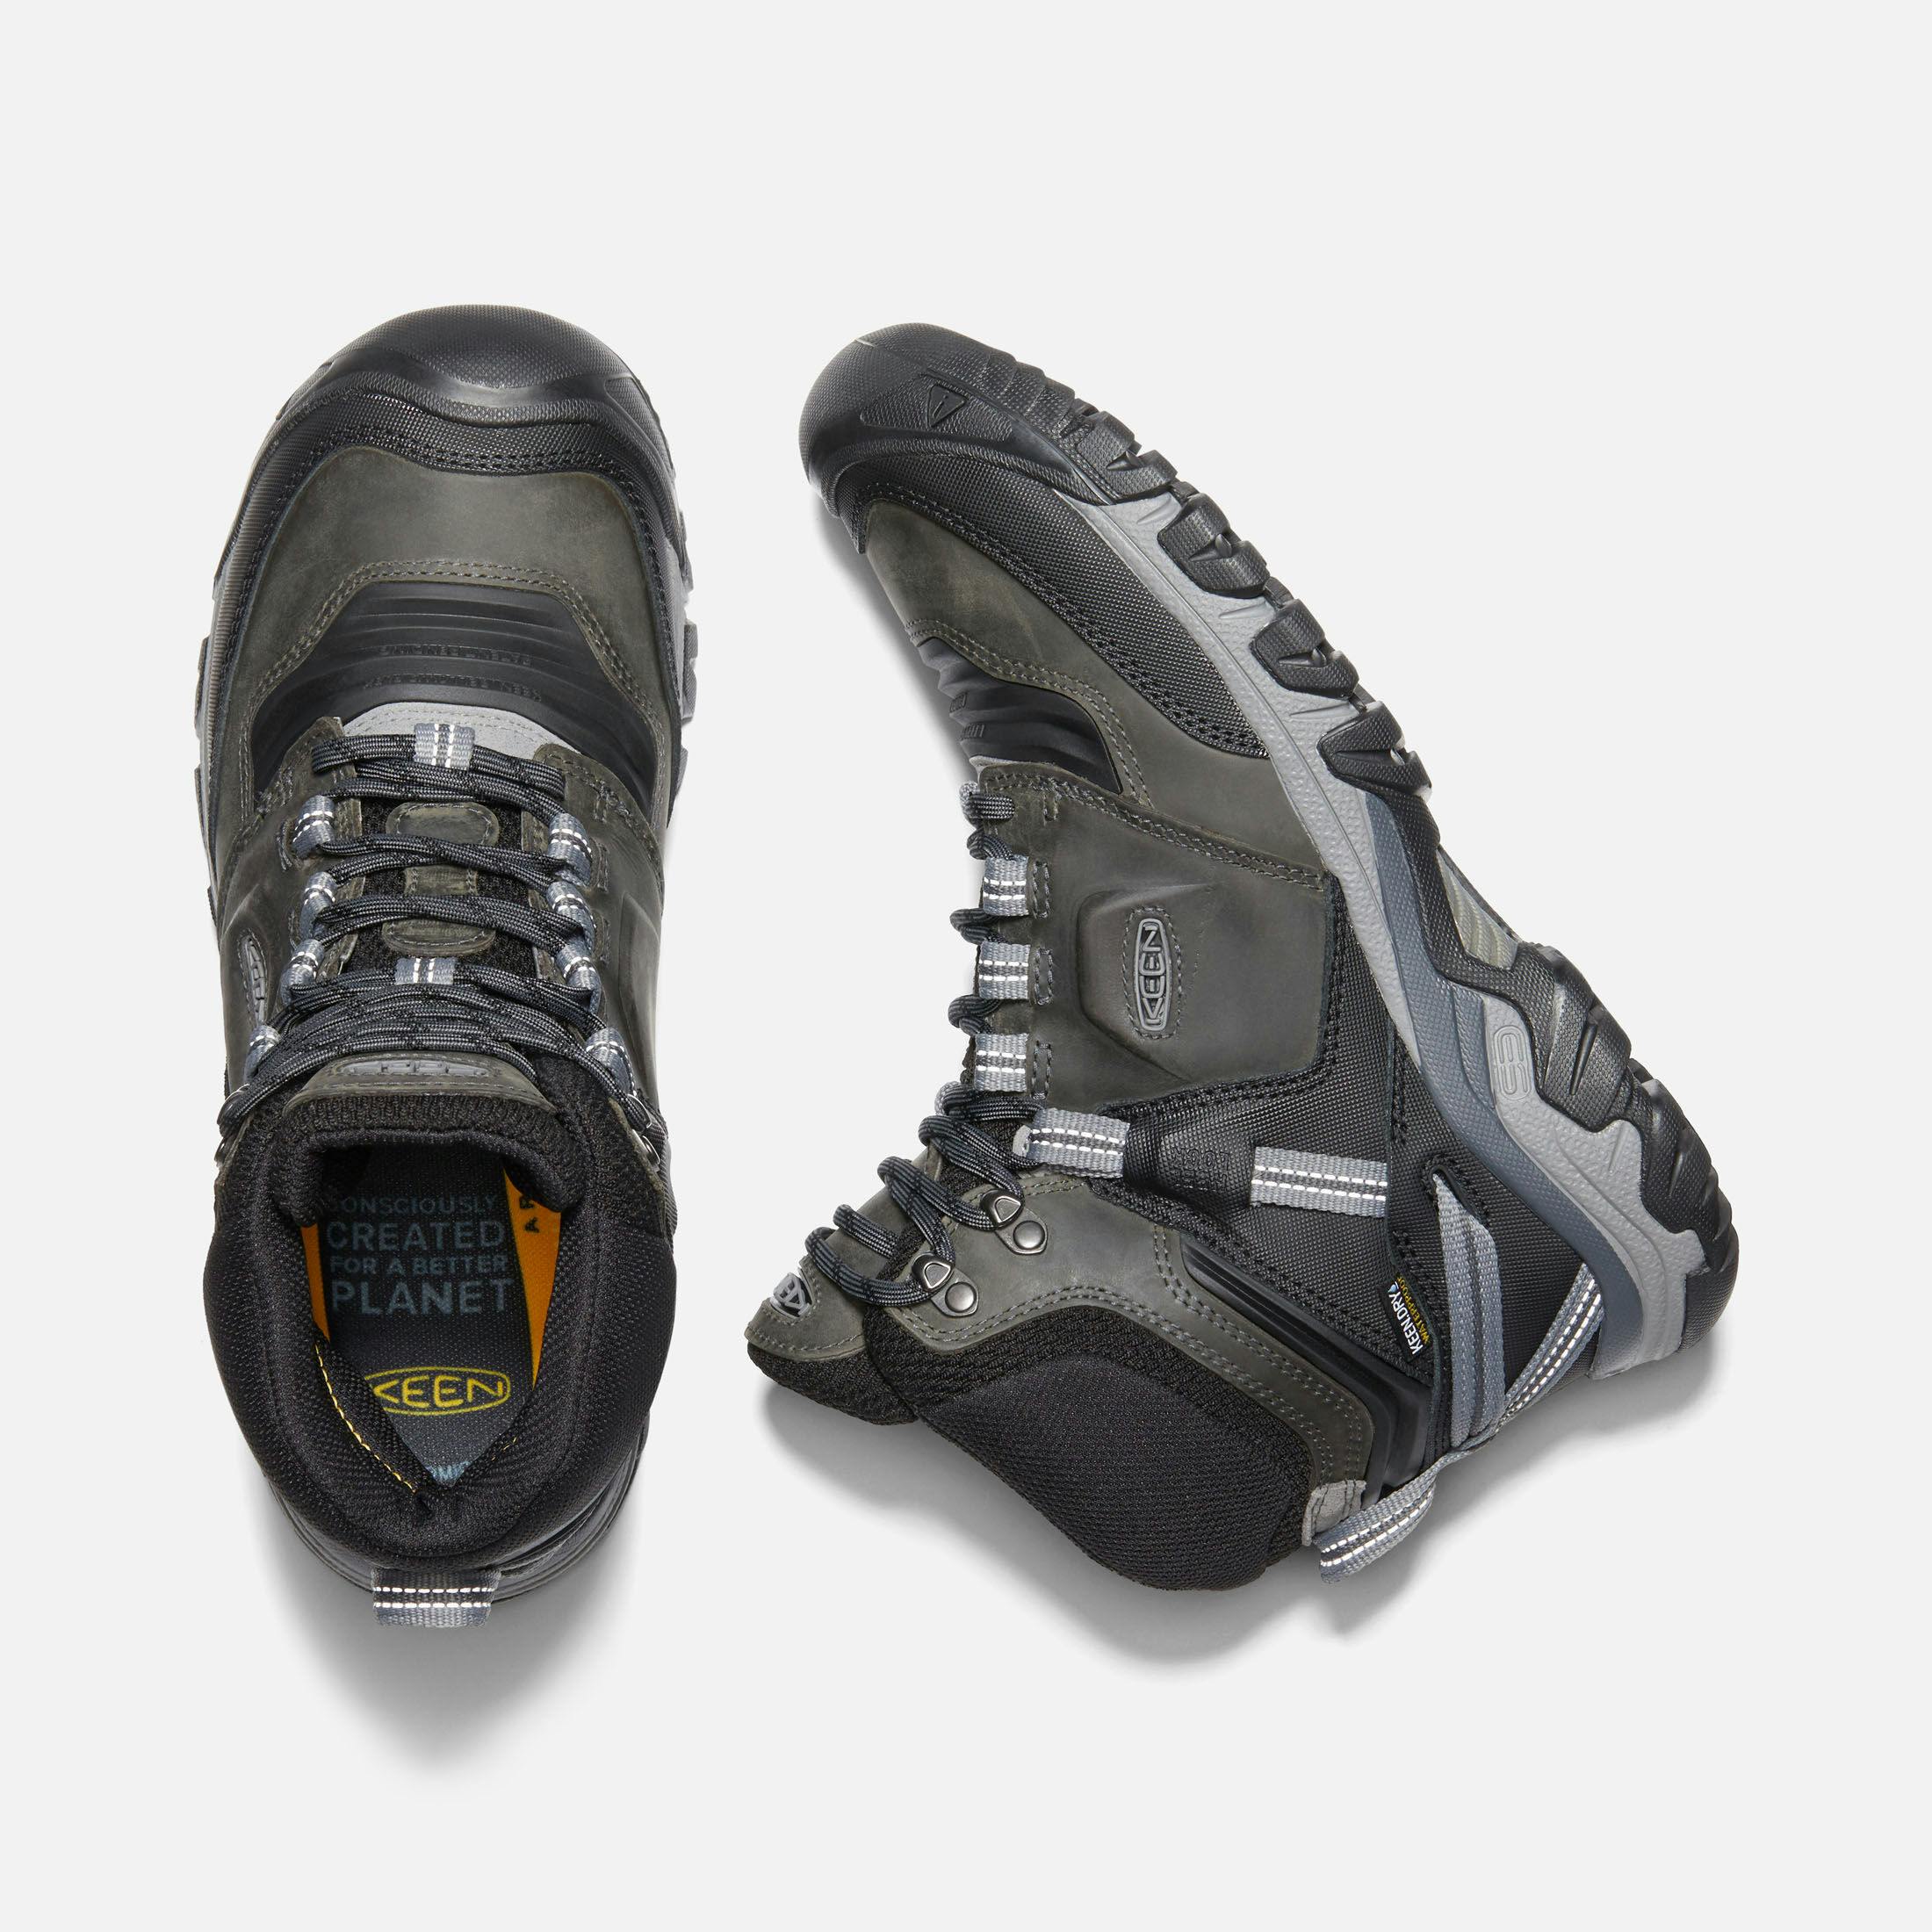 KEEN Men's Ridge Flex Waterproof Mid Hiking Boots